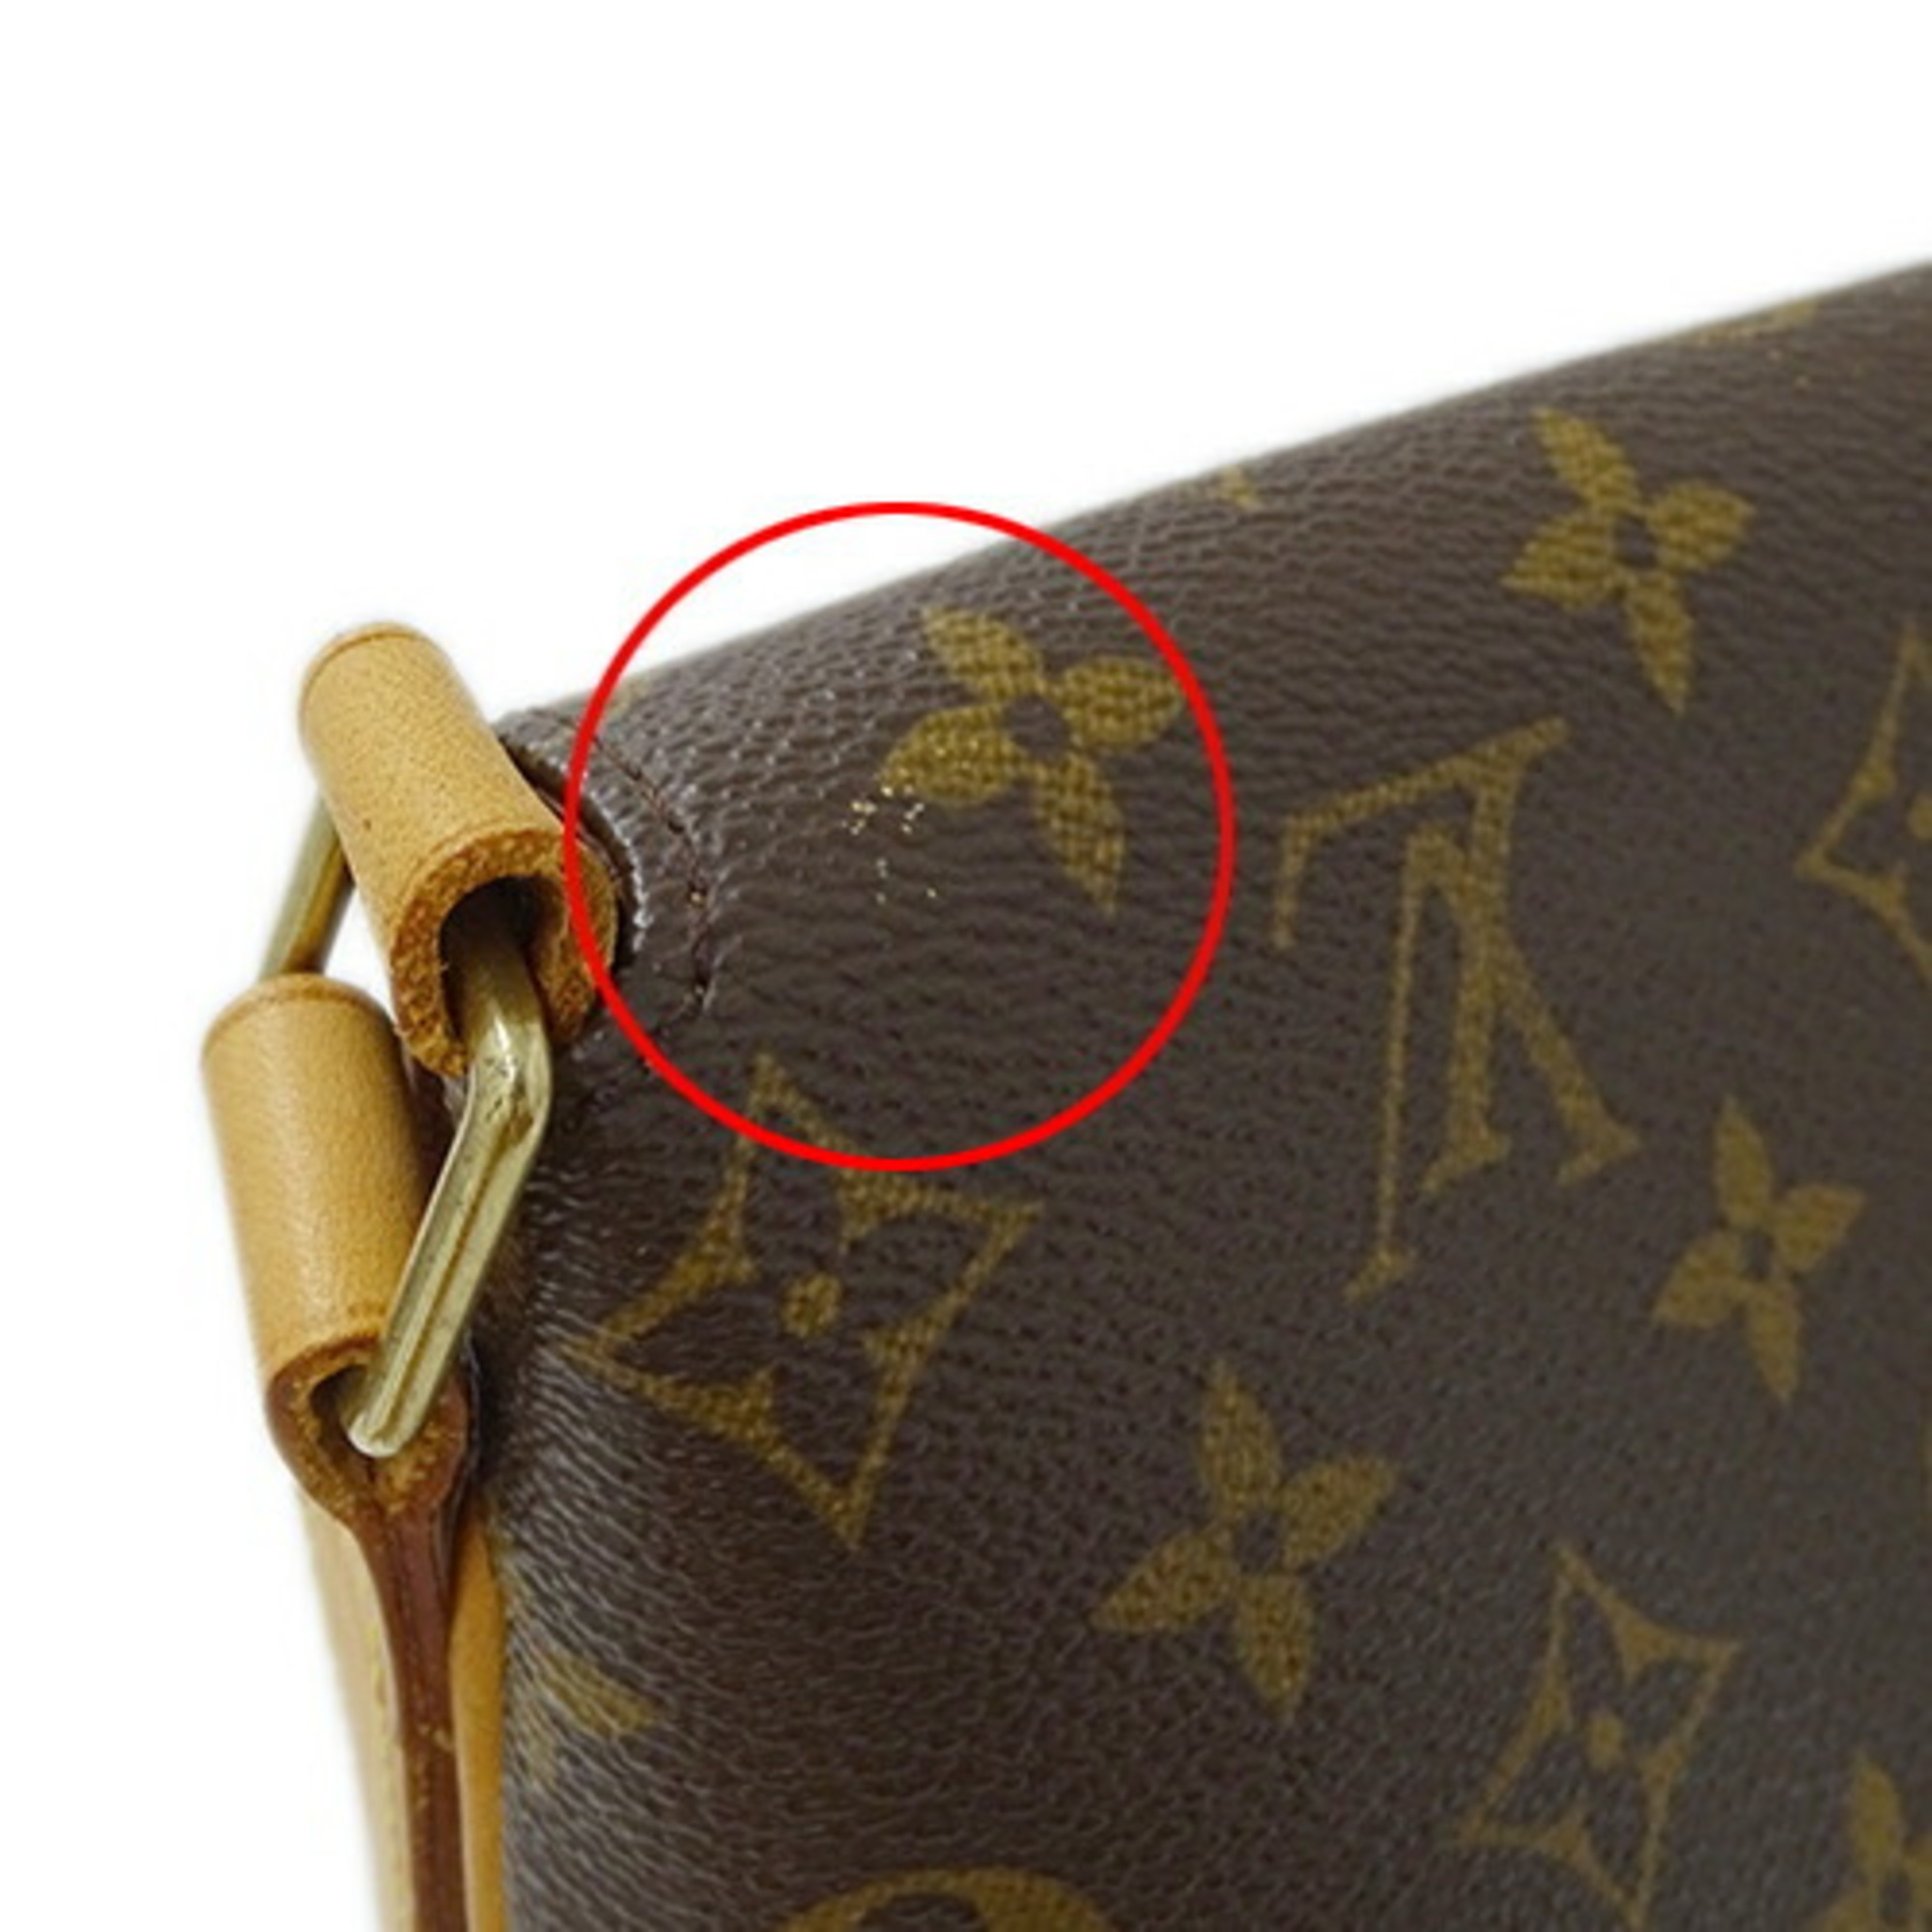 Louis Vuitton LOUIS VUITTON Bag Monogram Women's Shoulder Musette M51256 Brown